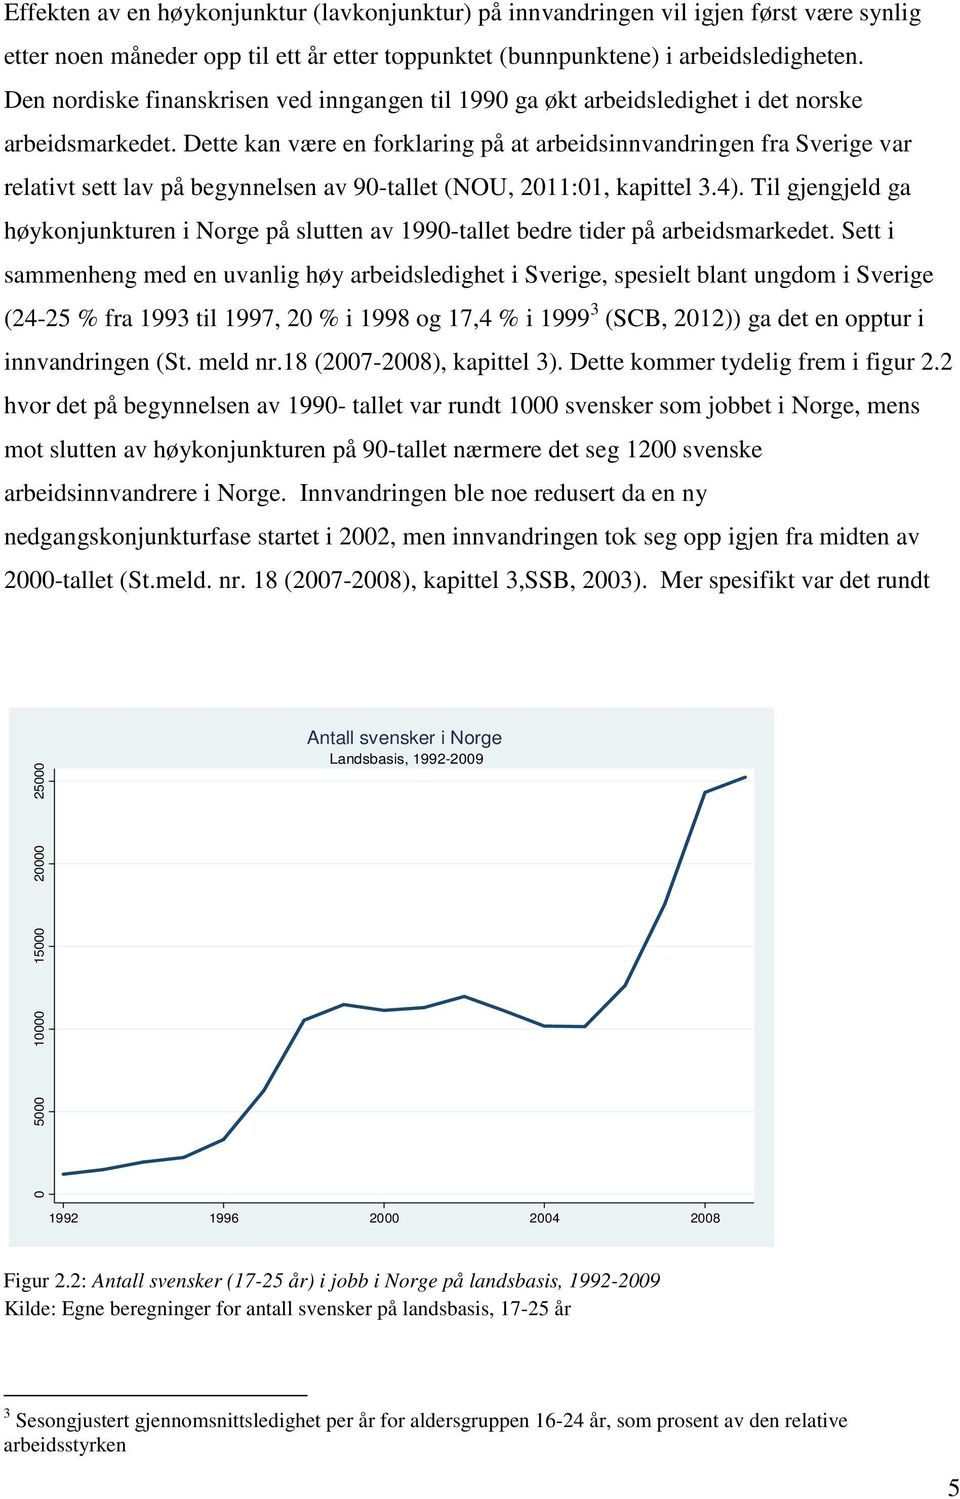 Dette kan være en forklaring på at arbeidsinnvandringen fra Sverige var relativt sett lav på begynnelsen av 90-tallet (NOU, 2011:01, kapittel 3.4).